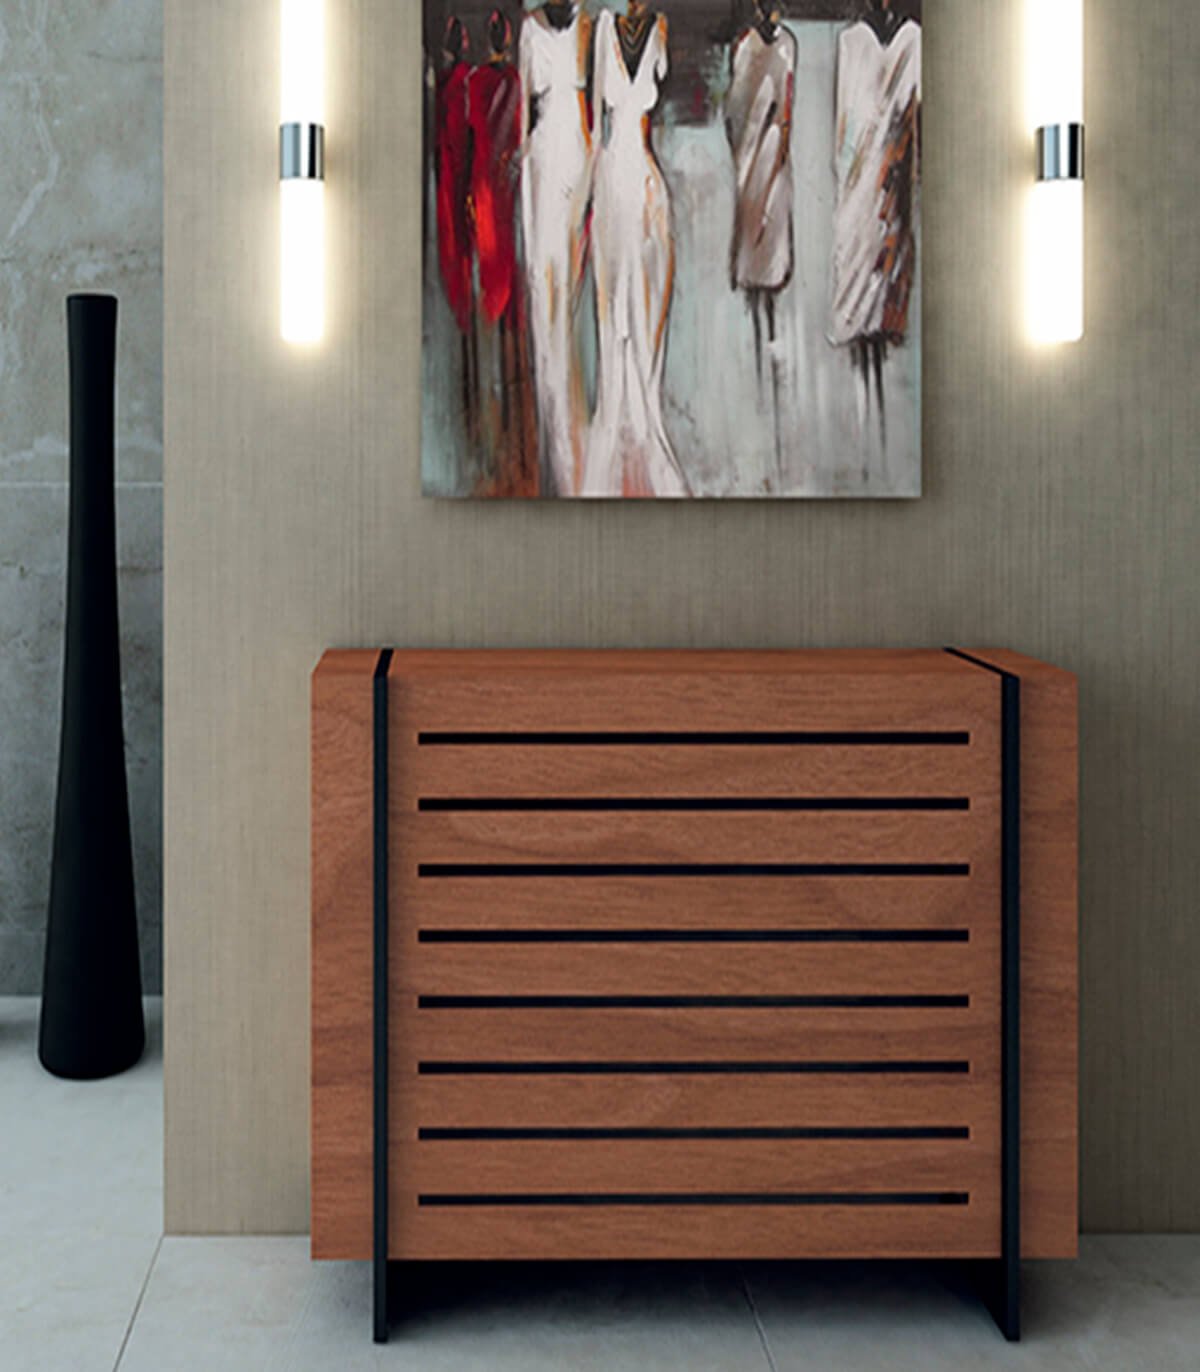 Radiadores Ikea: La mejor selección de radiadores de calidad y diseño para tu hogar